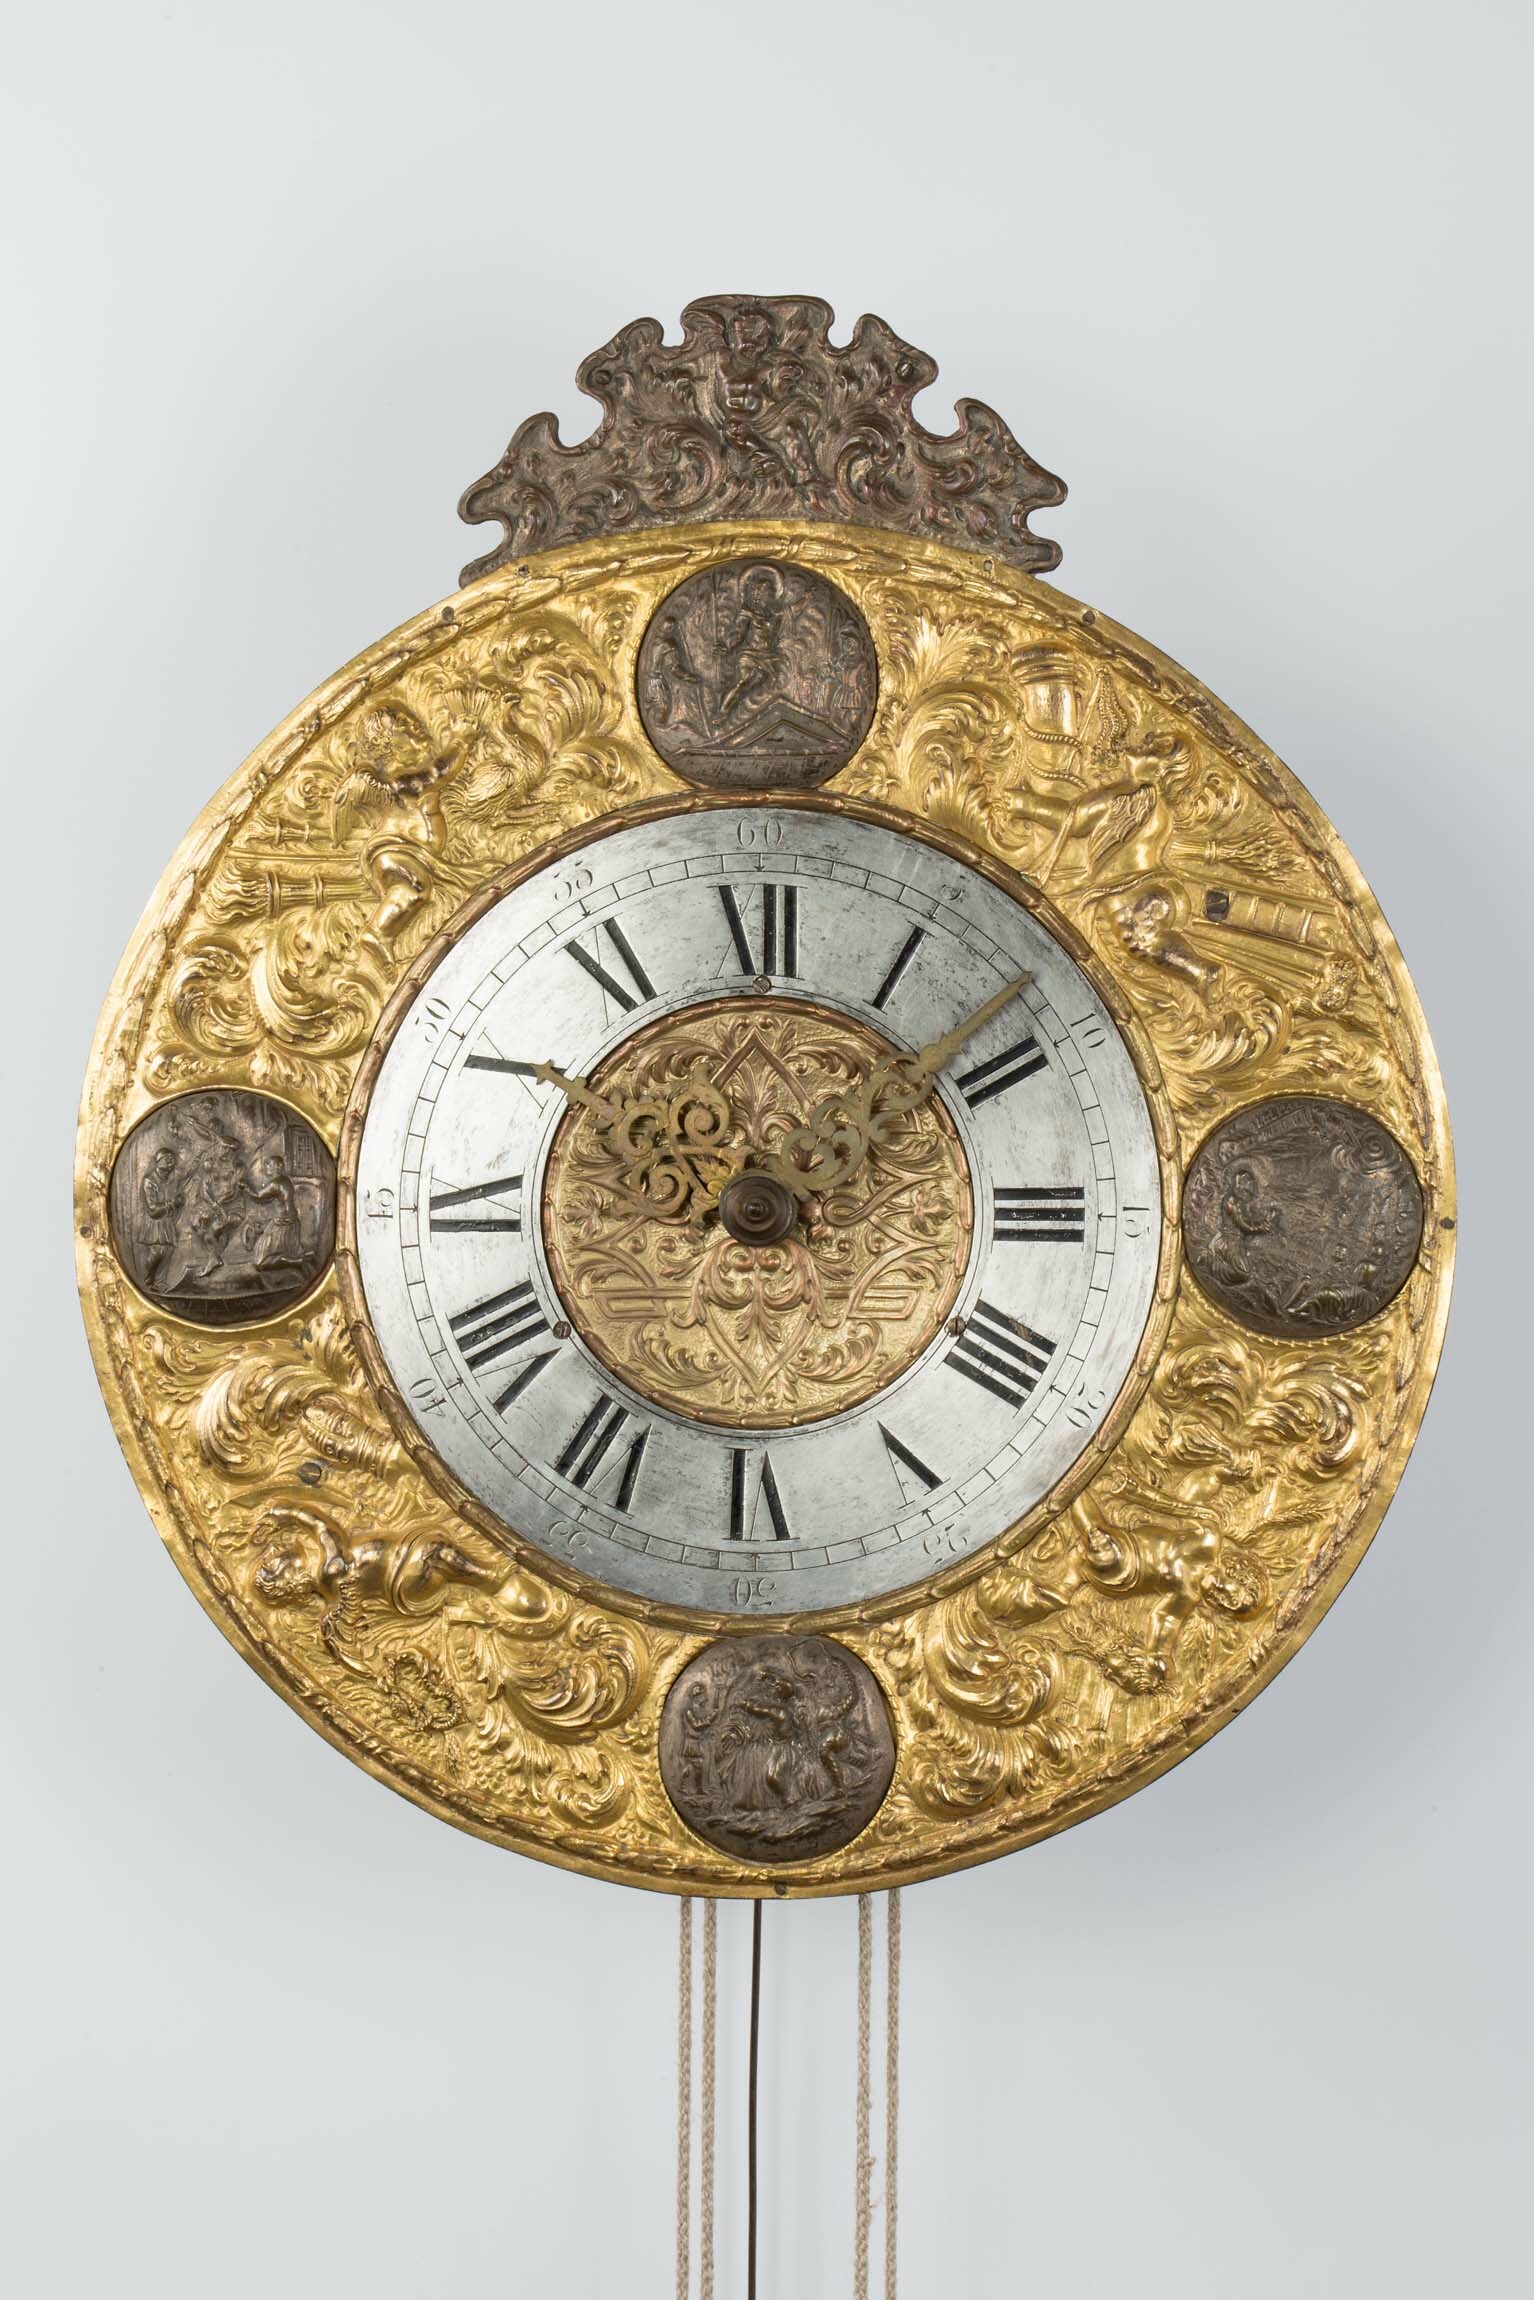 Telleruhr, Mitteleuropa, 18. Jahrhundert (Deutsches Uhrenmuseum CC BY-SA)